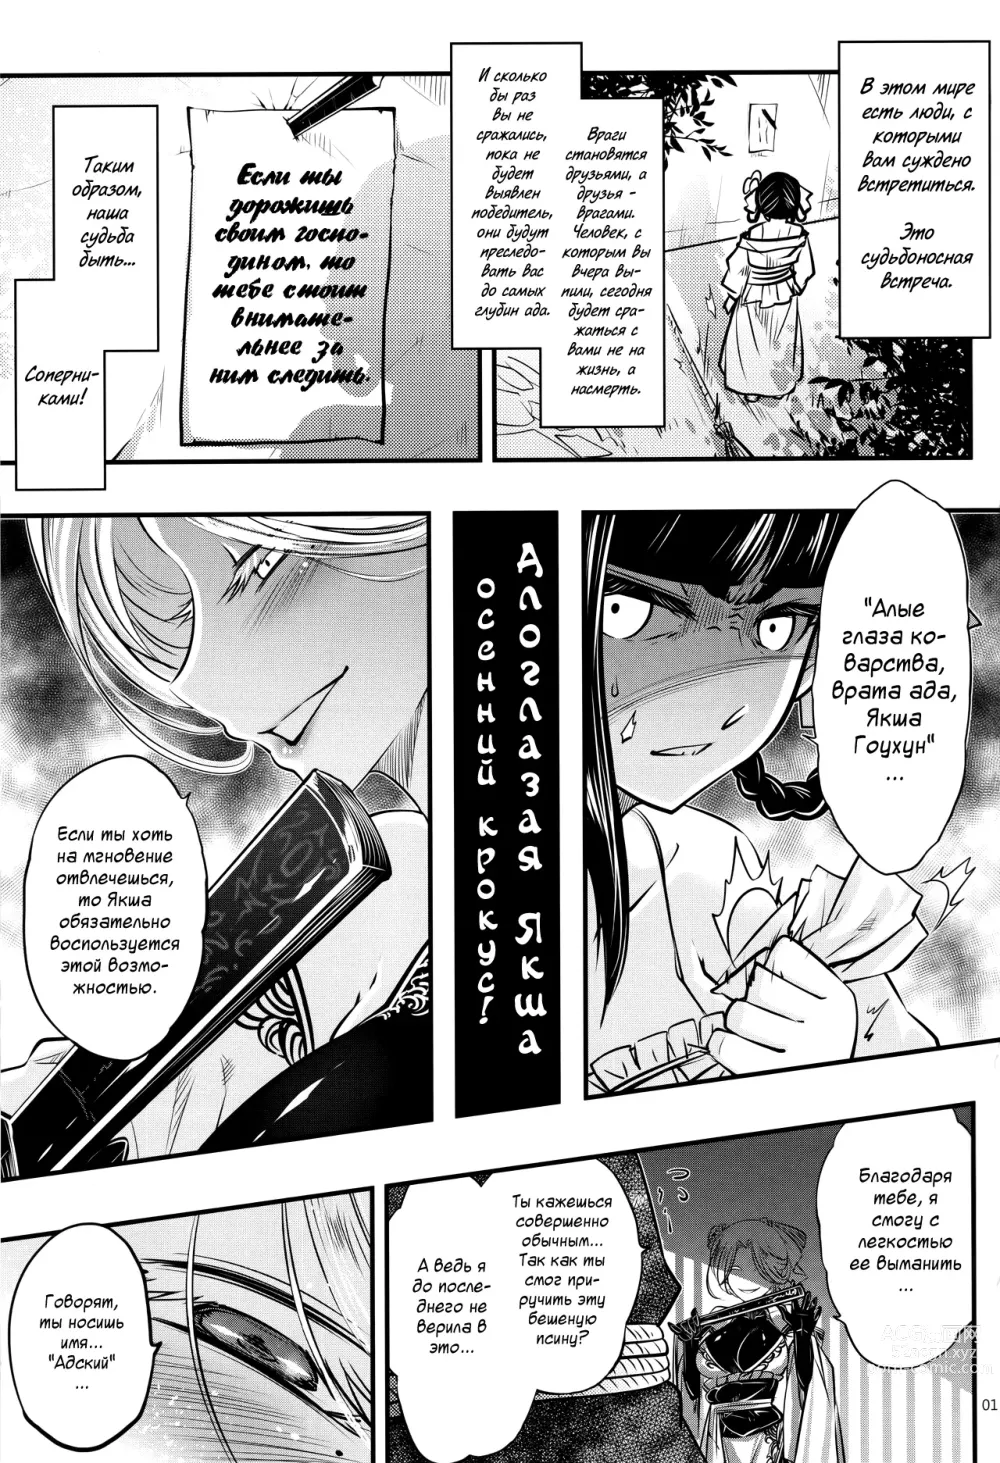 Page 2 of doujinshi Hyakkasou4 <<Akahitomiyasha, Tosuisen no Kyofu>>